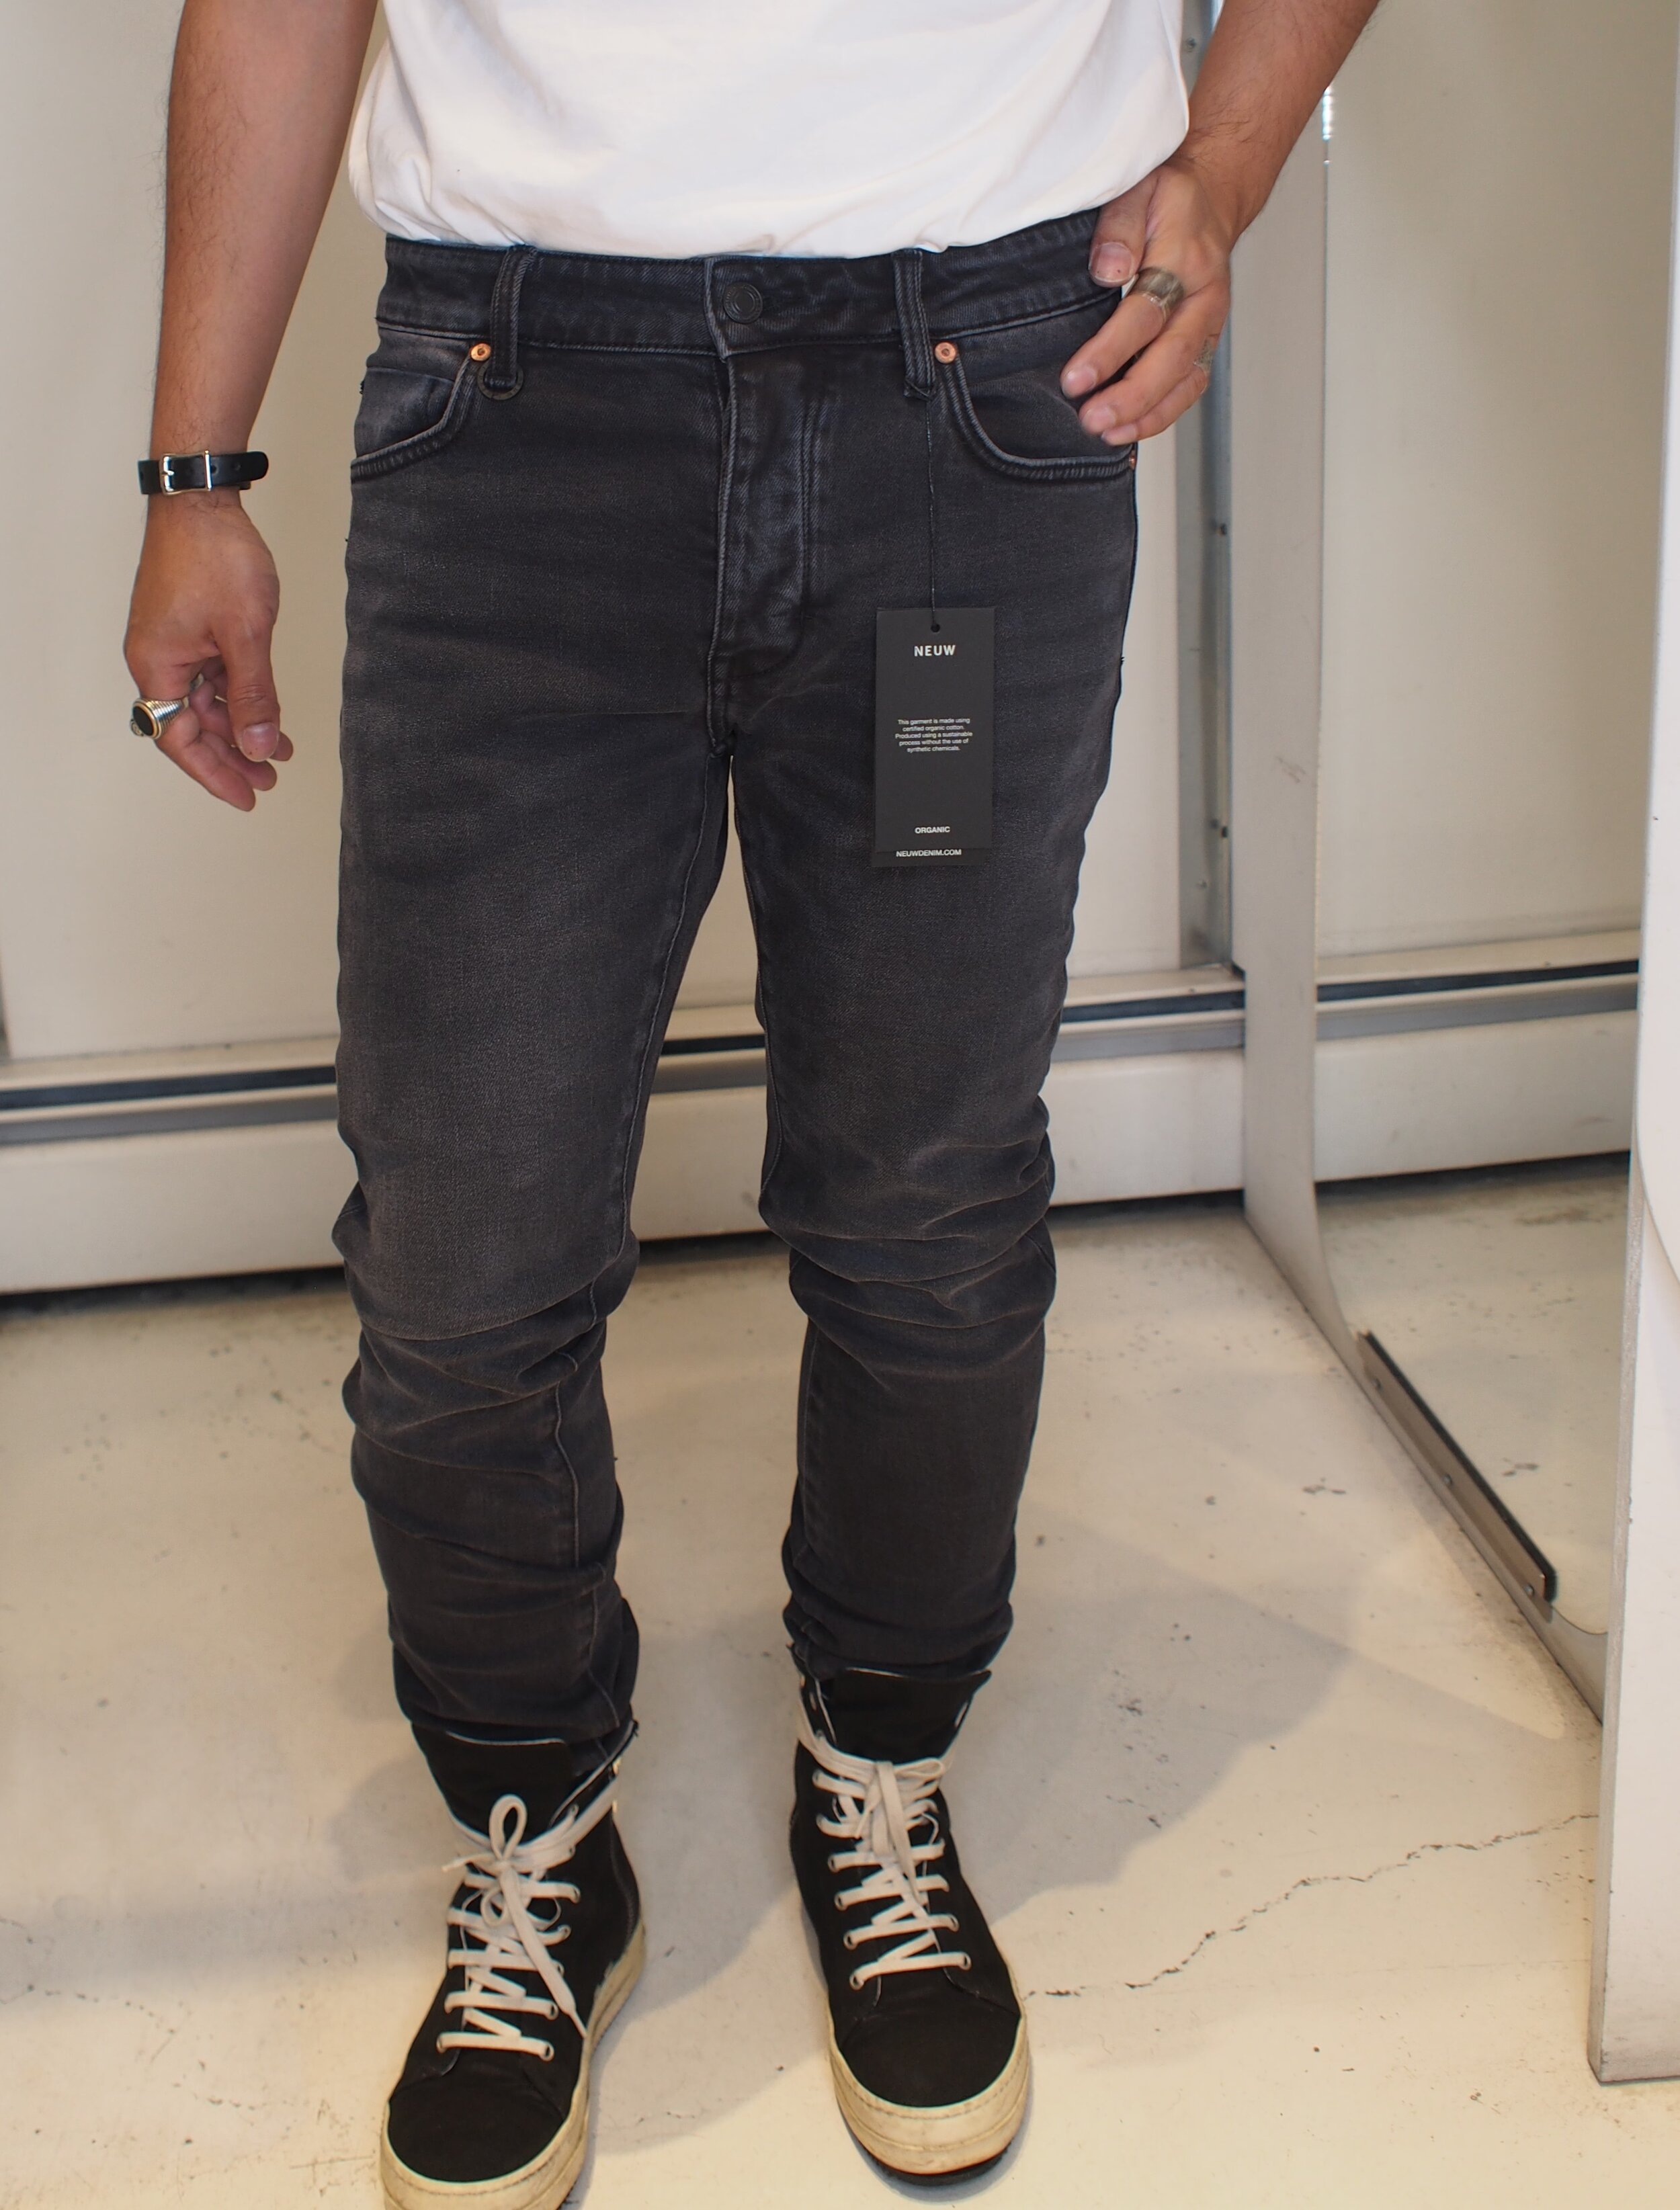 Evolve tricky ukrudtsplante NEUW Denim Iggy Slim skinny Jeans - Slowdive — global atomic designs inc